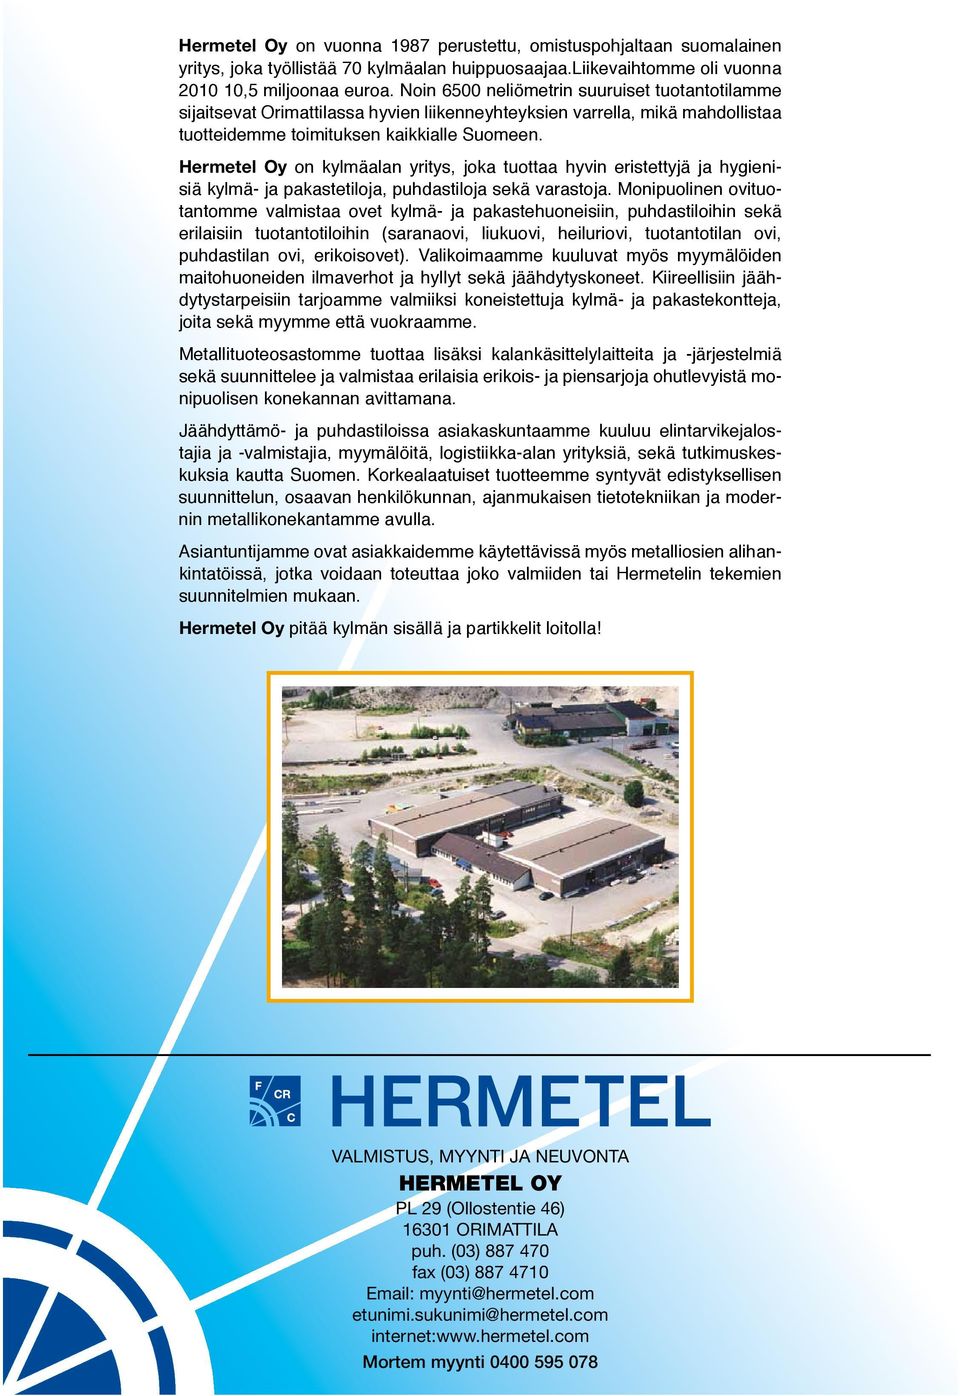 Hermetel Oy on kylmäalan yritys, joka tuottaa hyvin eristettyjä ja hygienisiä kylmä- ja pakastetiloja, puhdastiloja sekä varastoja.